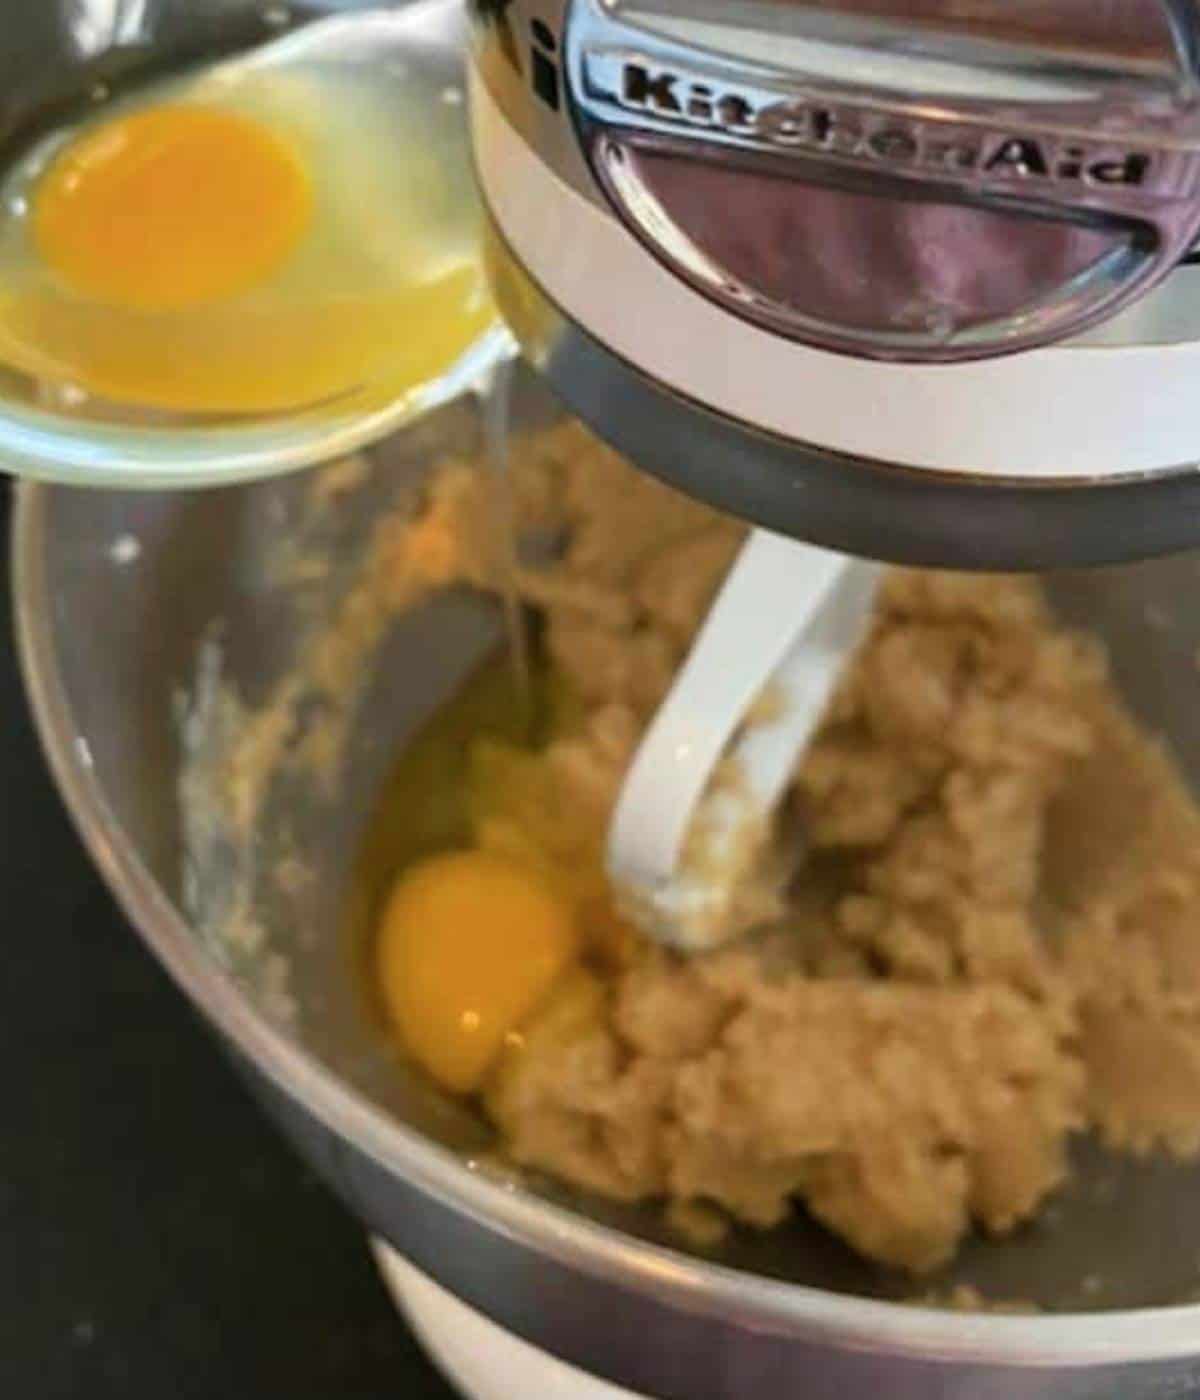 Adding eggs into mixer.